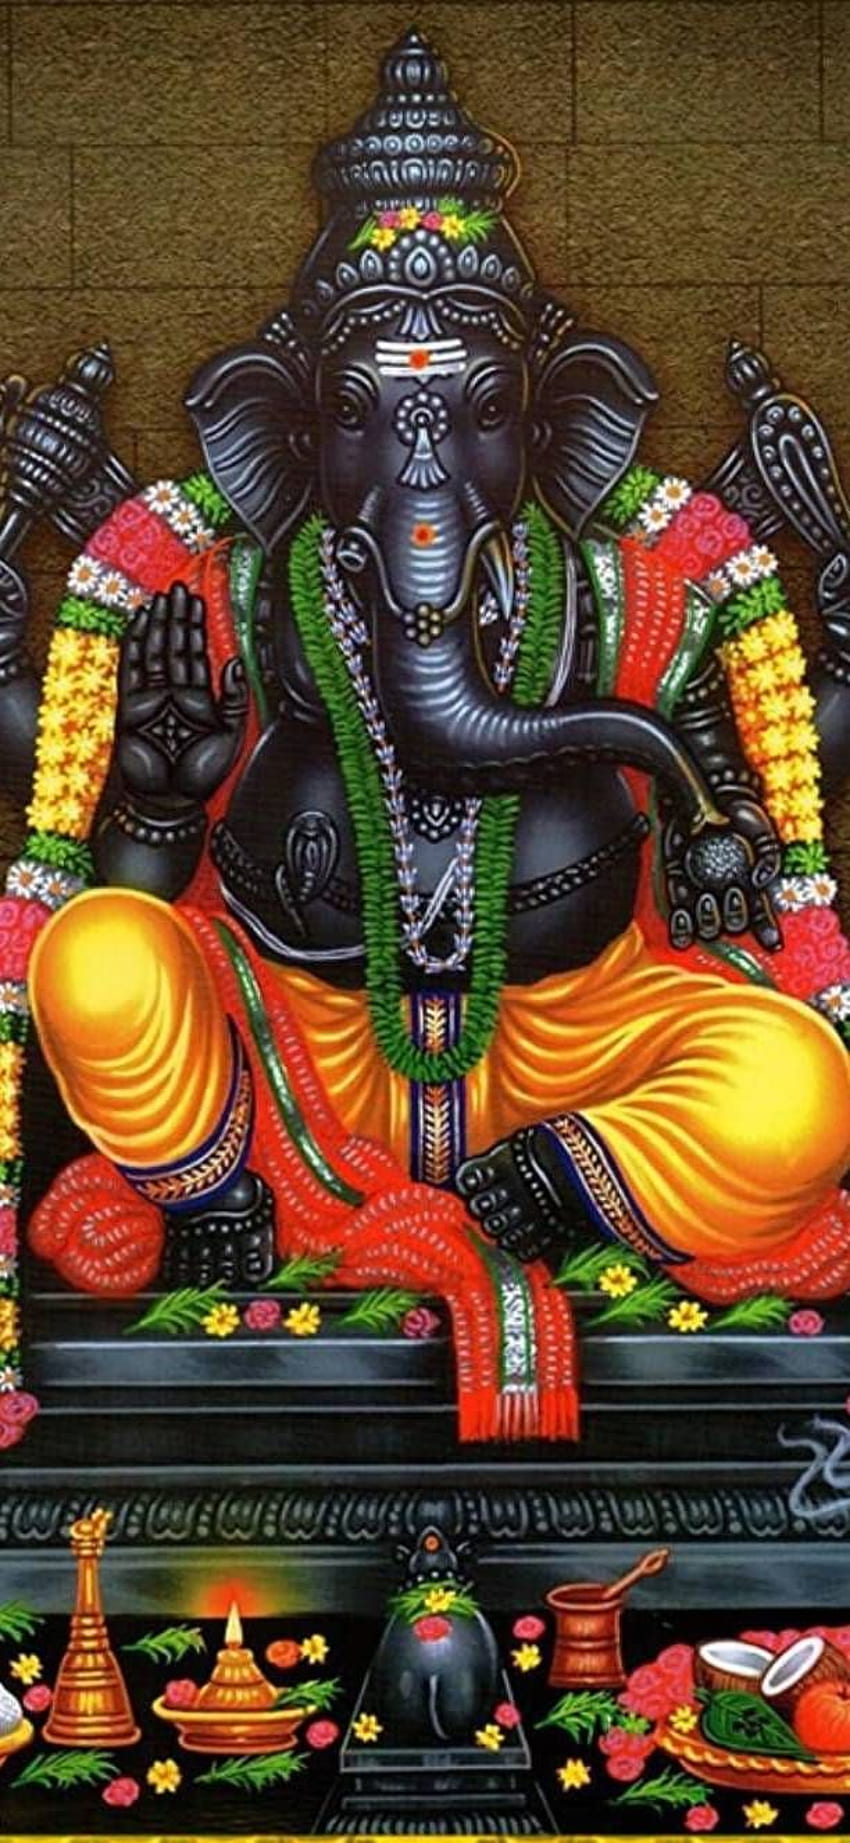 Lord vinayagar . iPhone nature, Lord ganesha, Android, Ganesh God ...